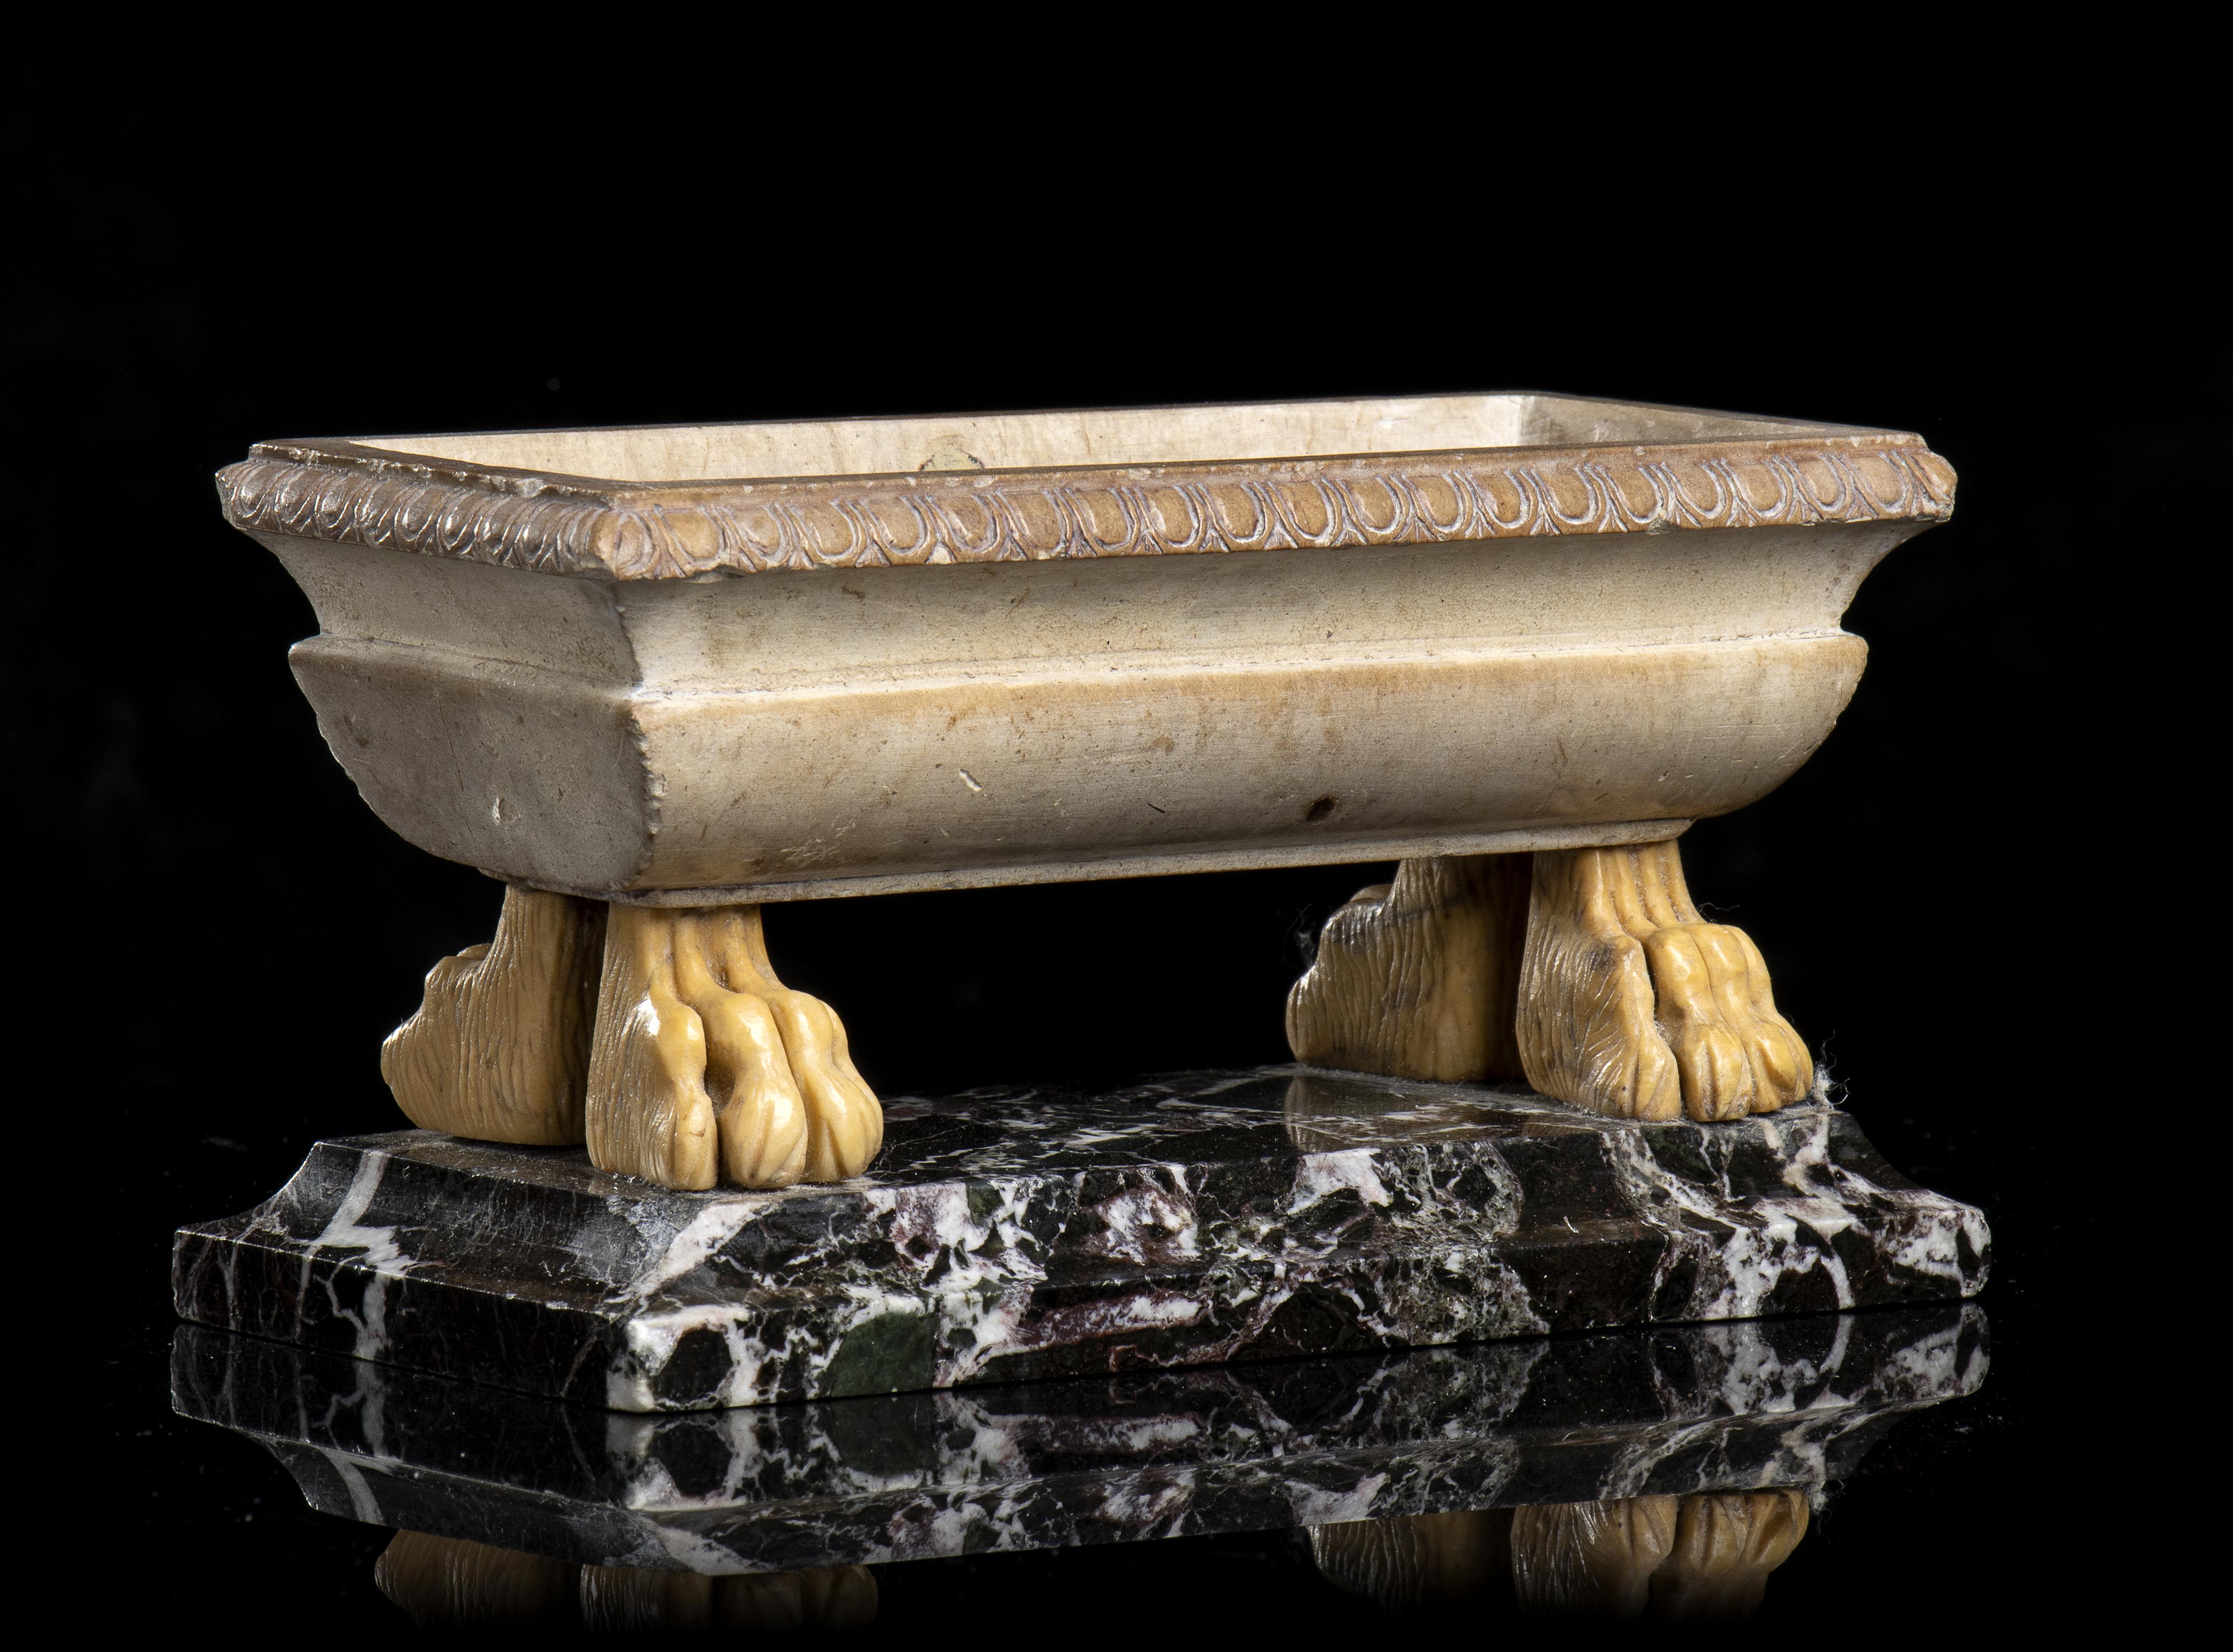 Ein Giallo Antico (Giallo Numidia ) Marmor Grand Tour Modell einer Badewanne mit ferine Füße stehen auf einem quadratischen Violet Marmor zwei Ordnung Basis. Das Werk aus der Werkstatt von Benedetto Boschetti ist ein typisches Beispiel für die Grand